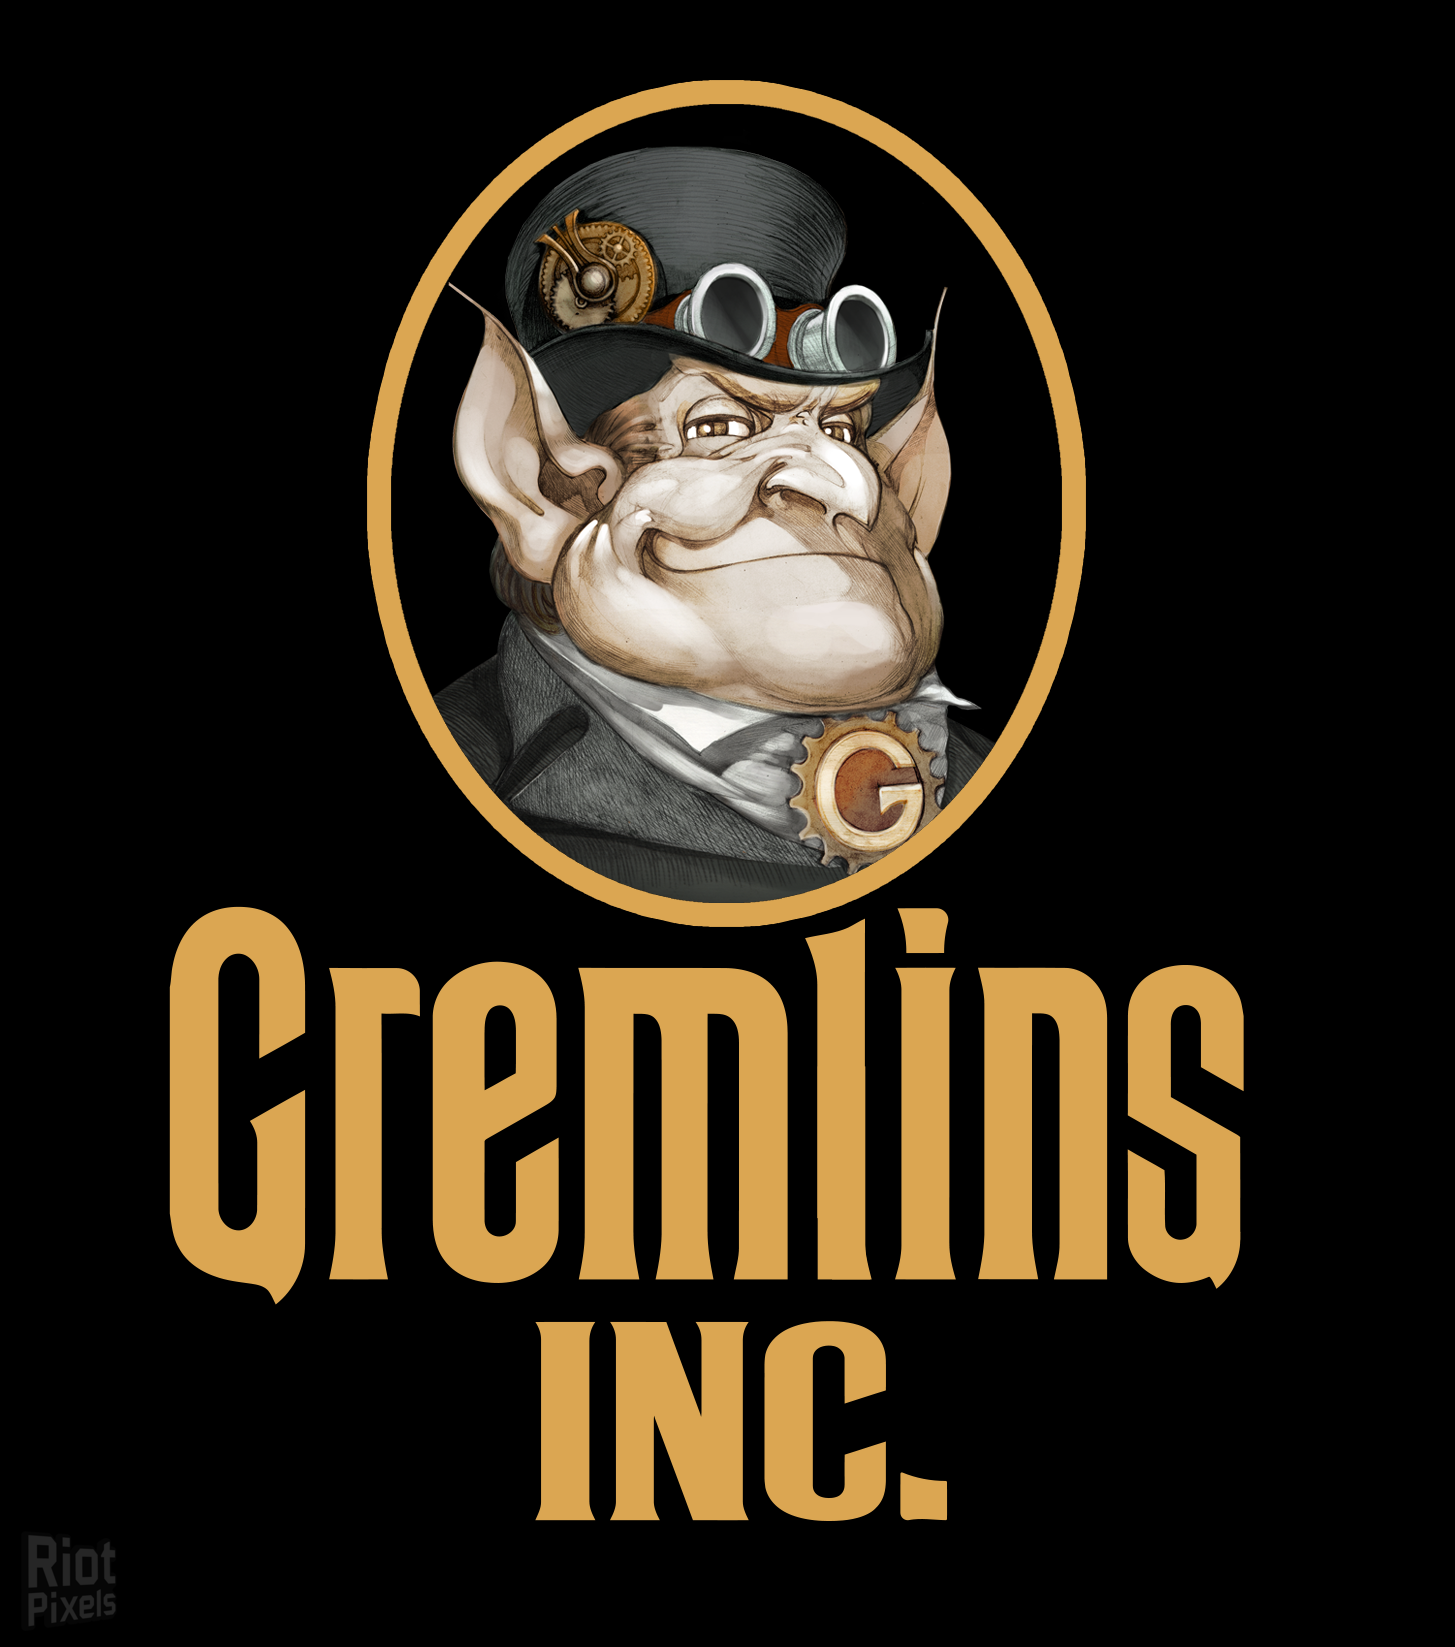 Steam gremlins inc фото 14